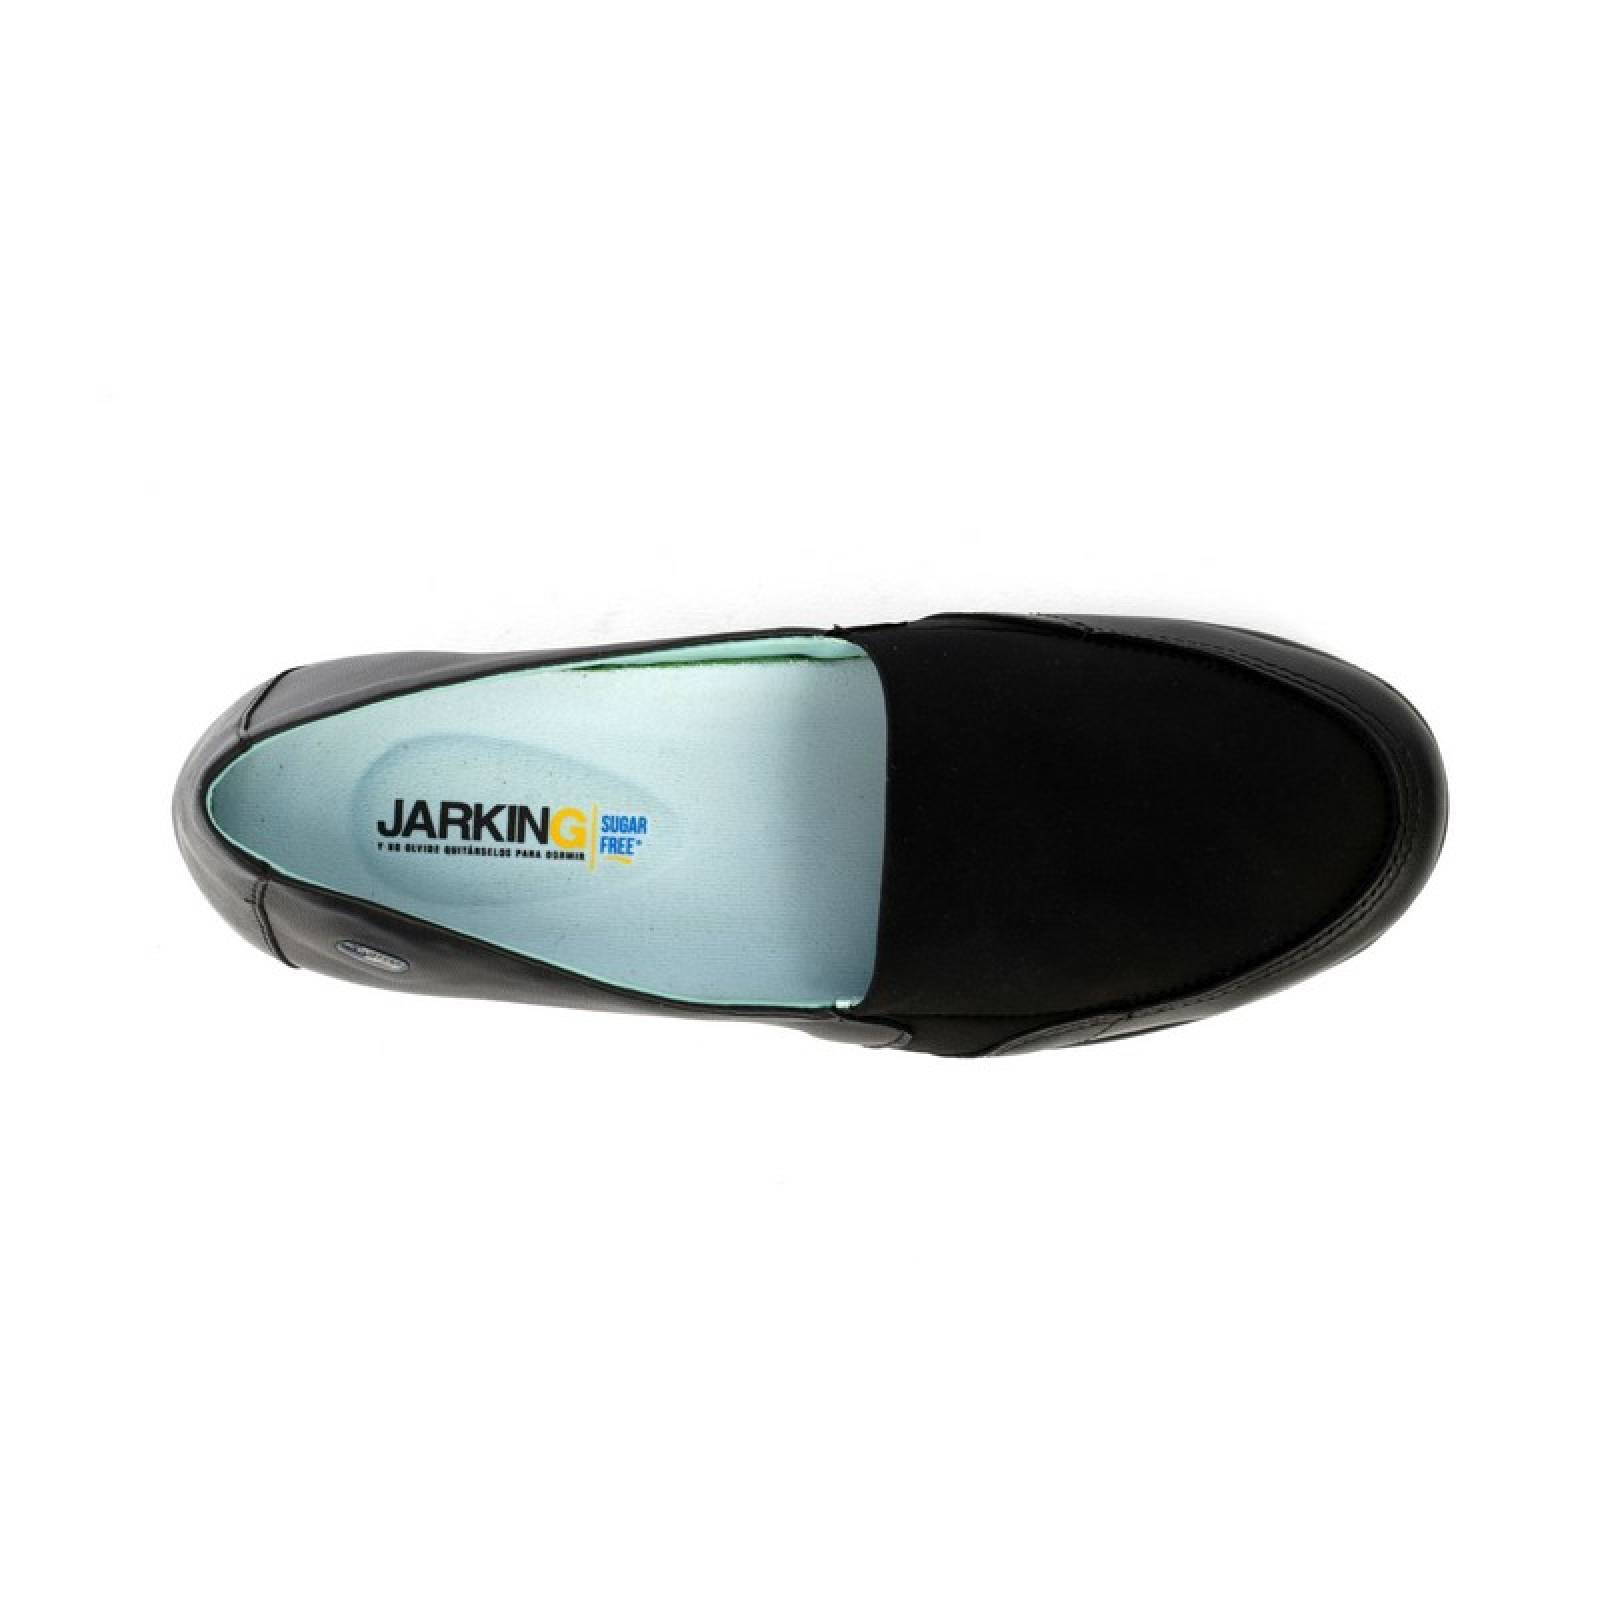 Jarking - Zapato Casual Negro Floreta de Licra con Amplitud Especial para Dama